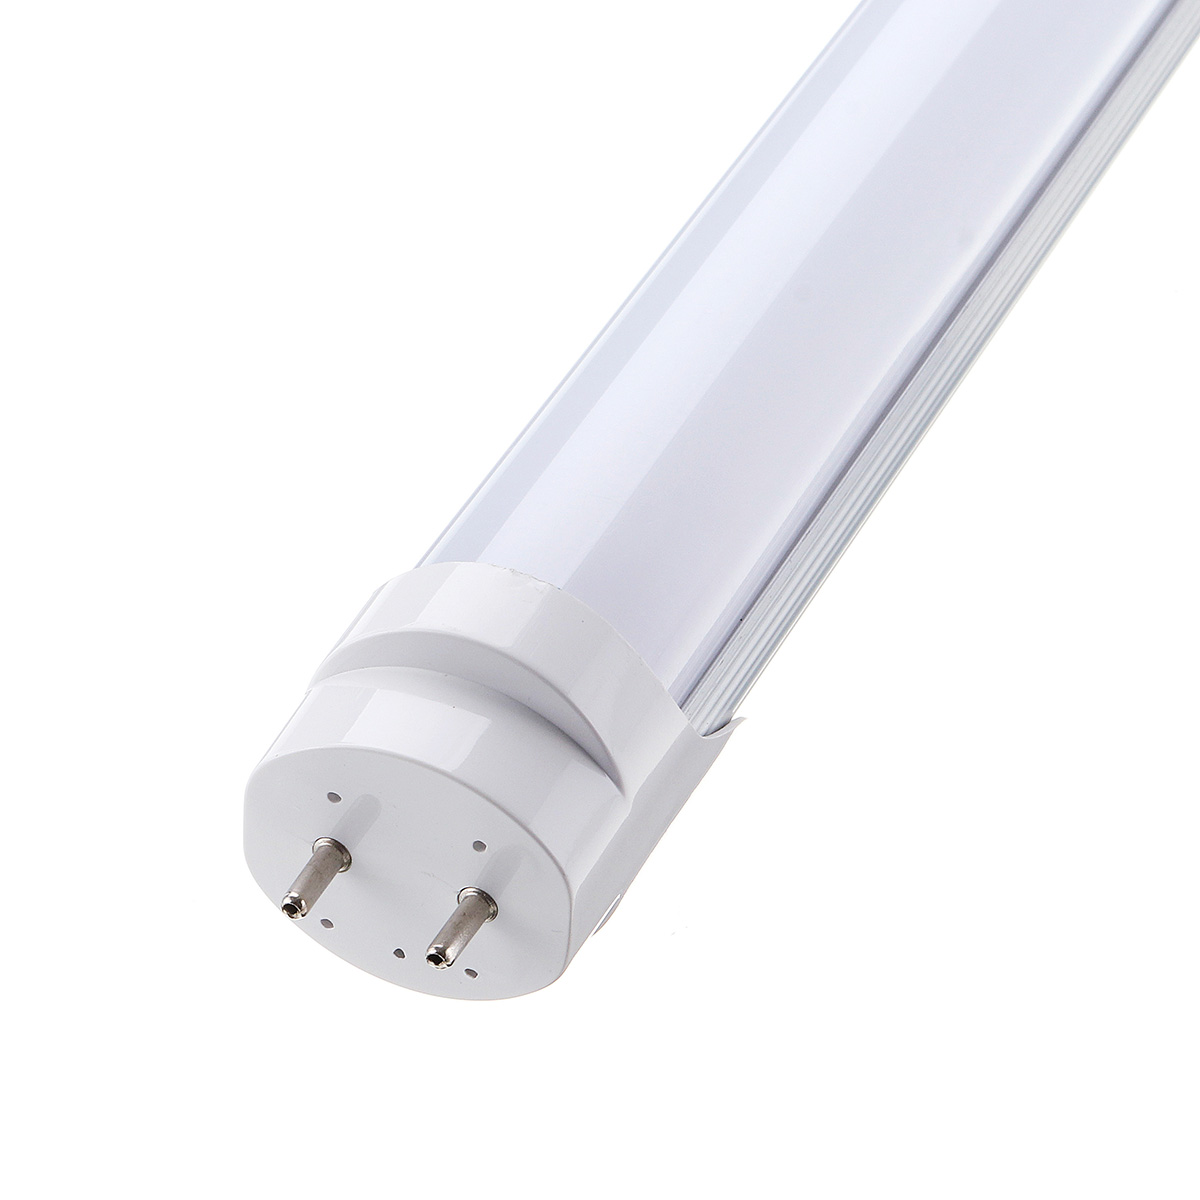 10PCS-50cm-T8-G13-8W-SMD2835-Fluorescent-Bulbs-36-LED-Tube-Light-for-Indoor-Home-Decor-AC85-265V-1477777-8